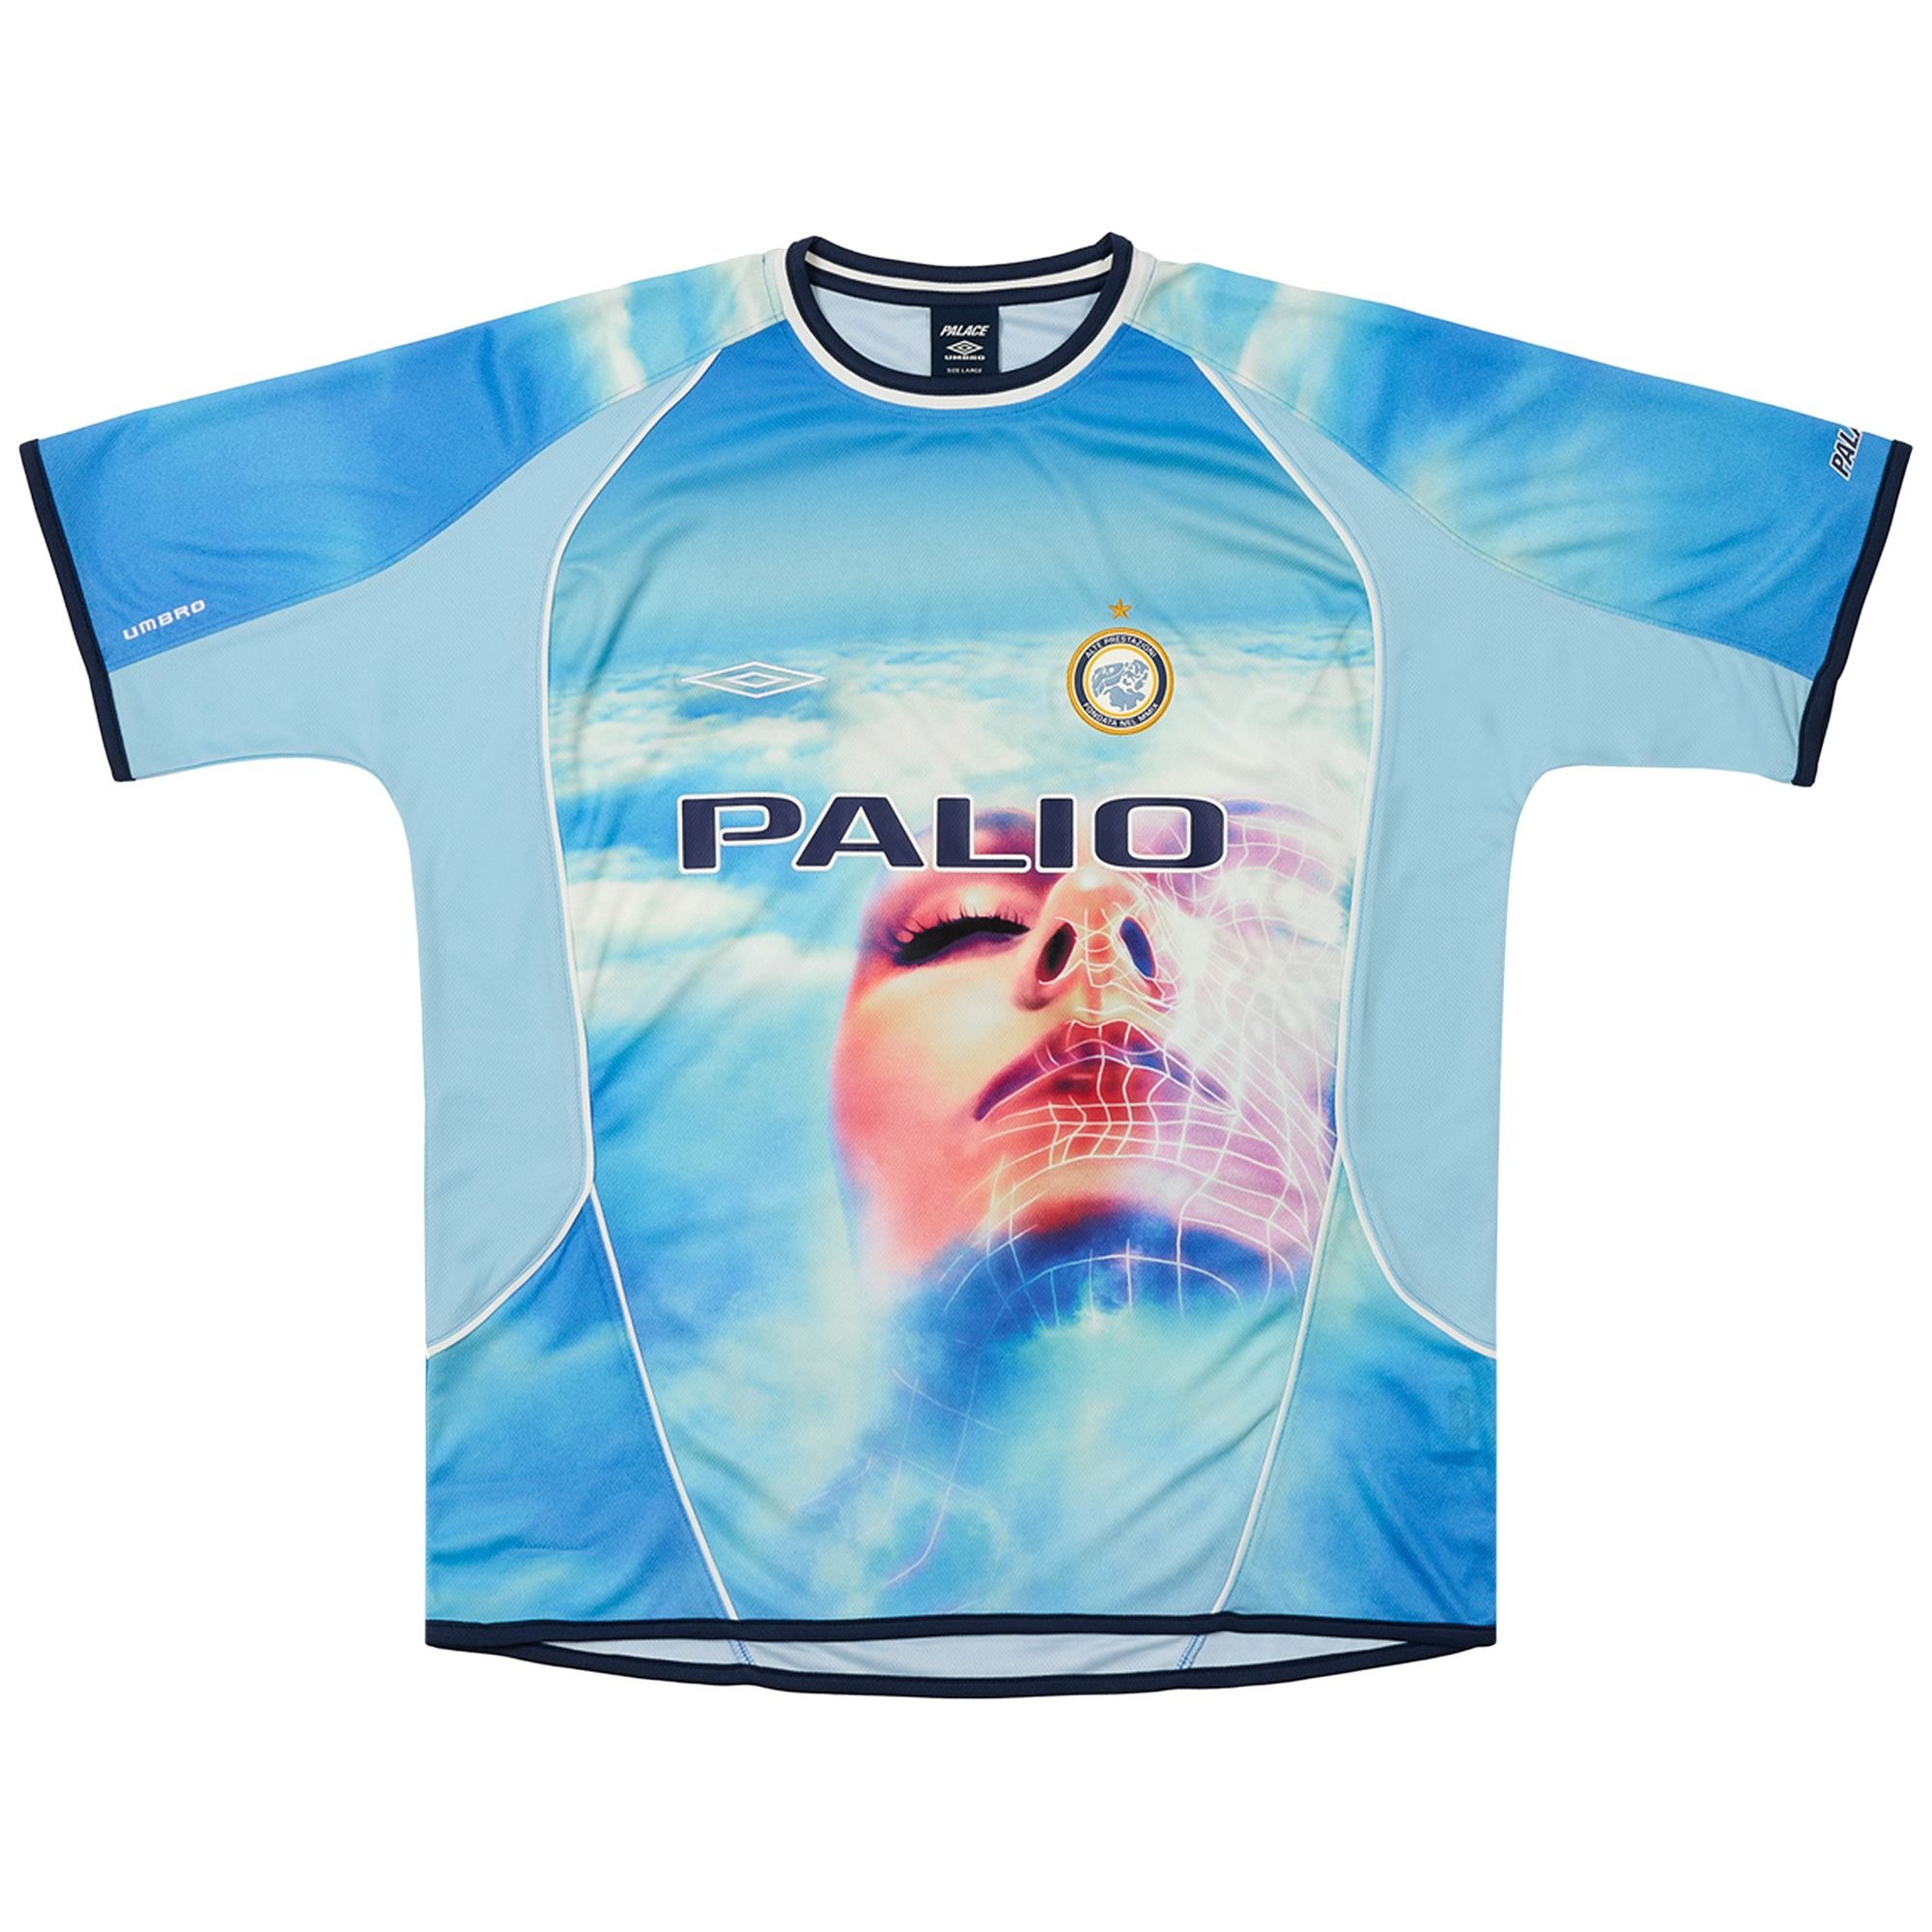 Palace x Umbro Away Shirt 'Dream Sky' - 1